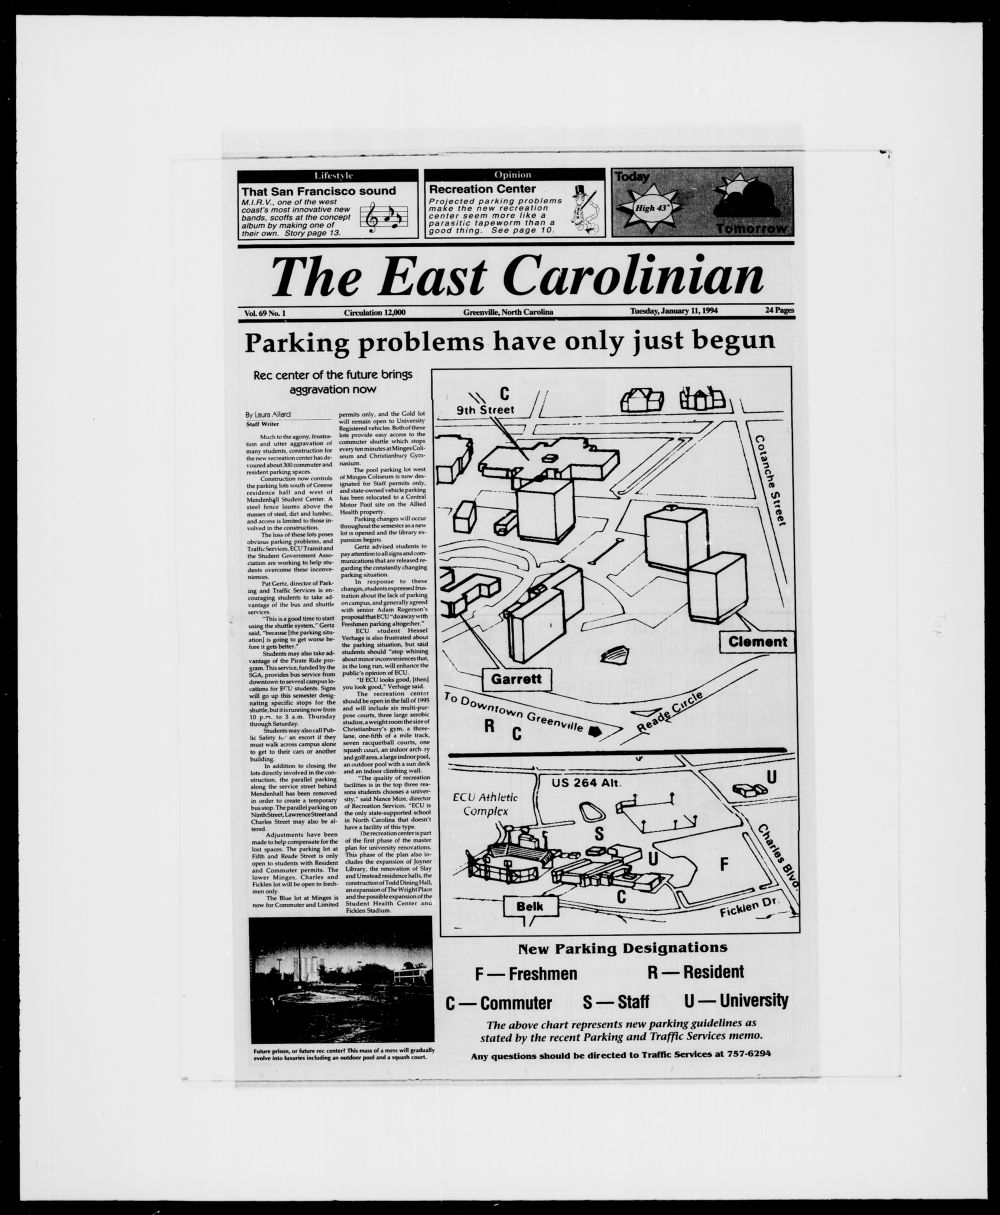 The East Carolinian, January 11, 1994